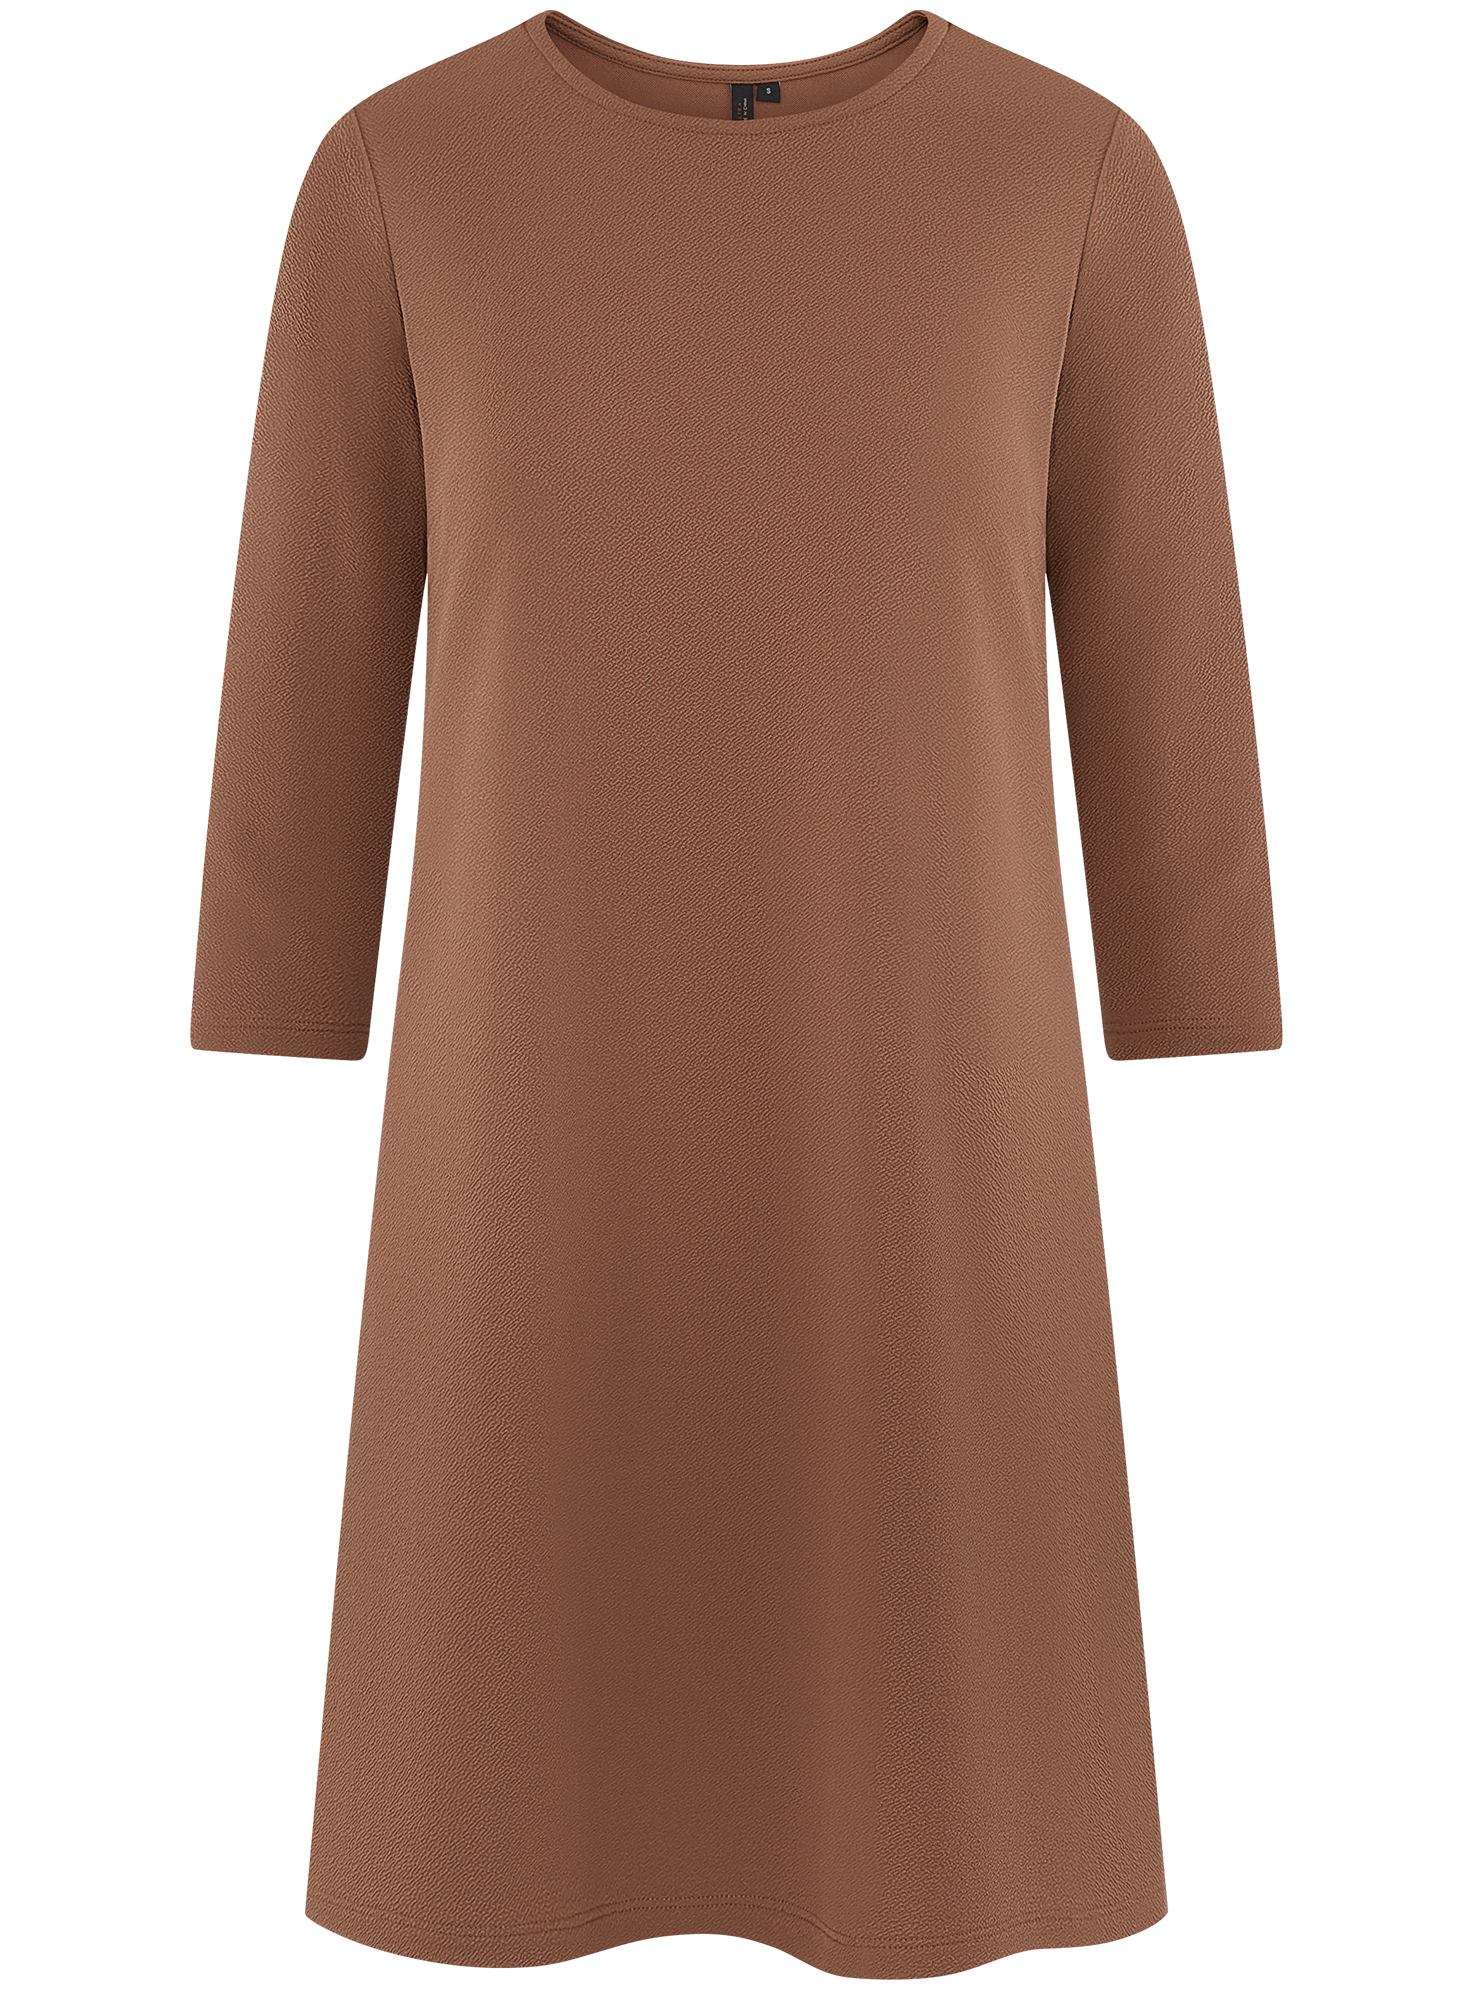 Платье женское oodji 14001253 коричневое 2XS